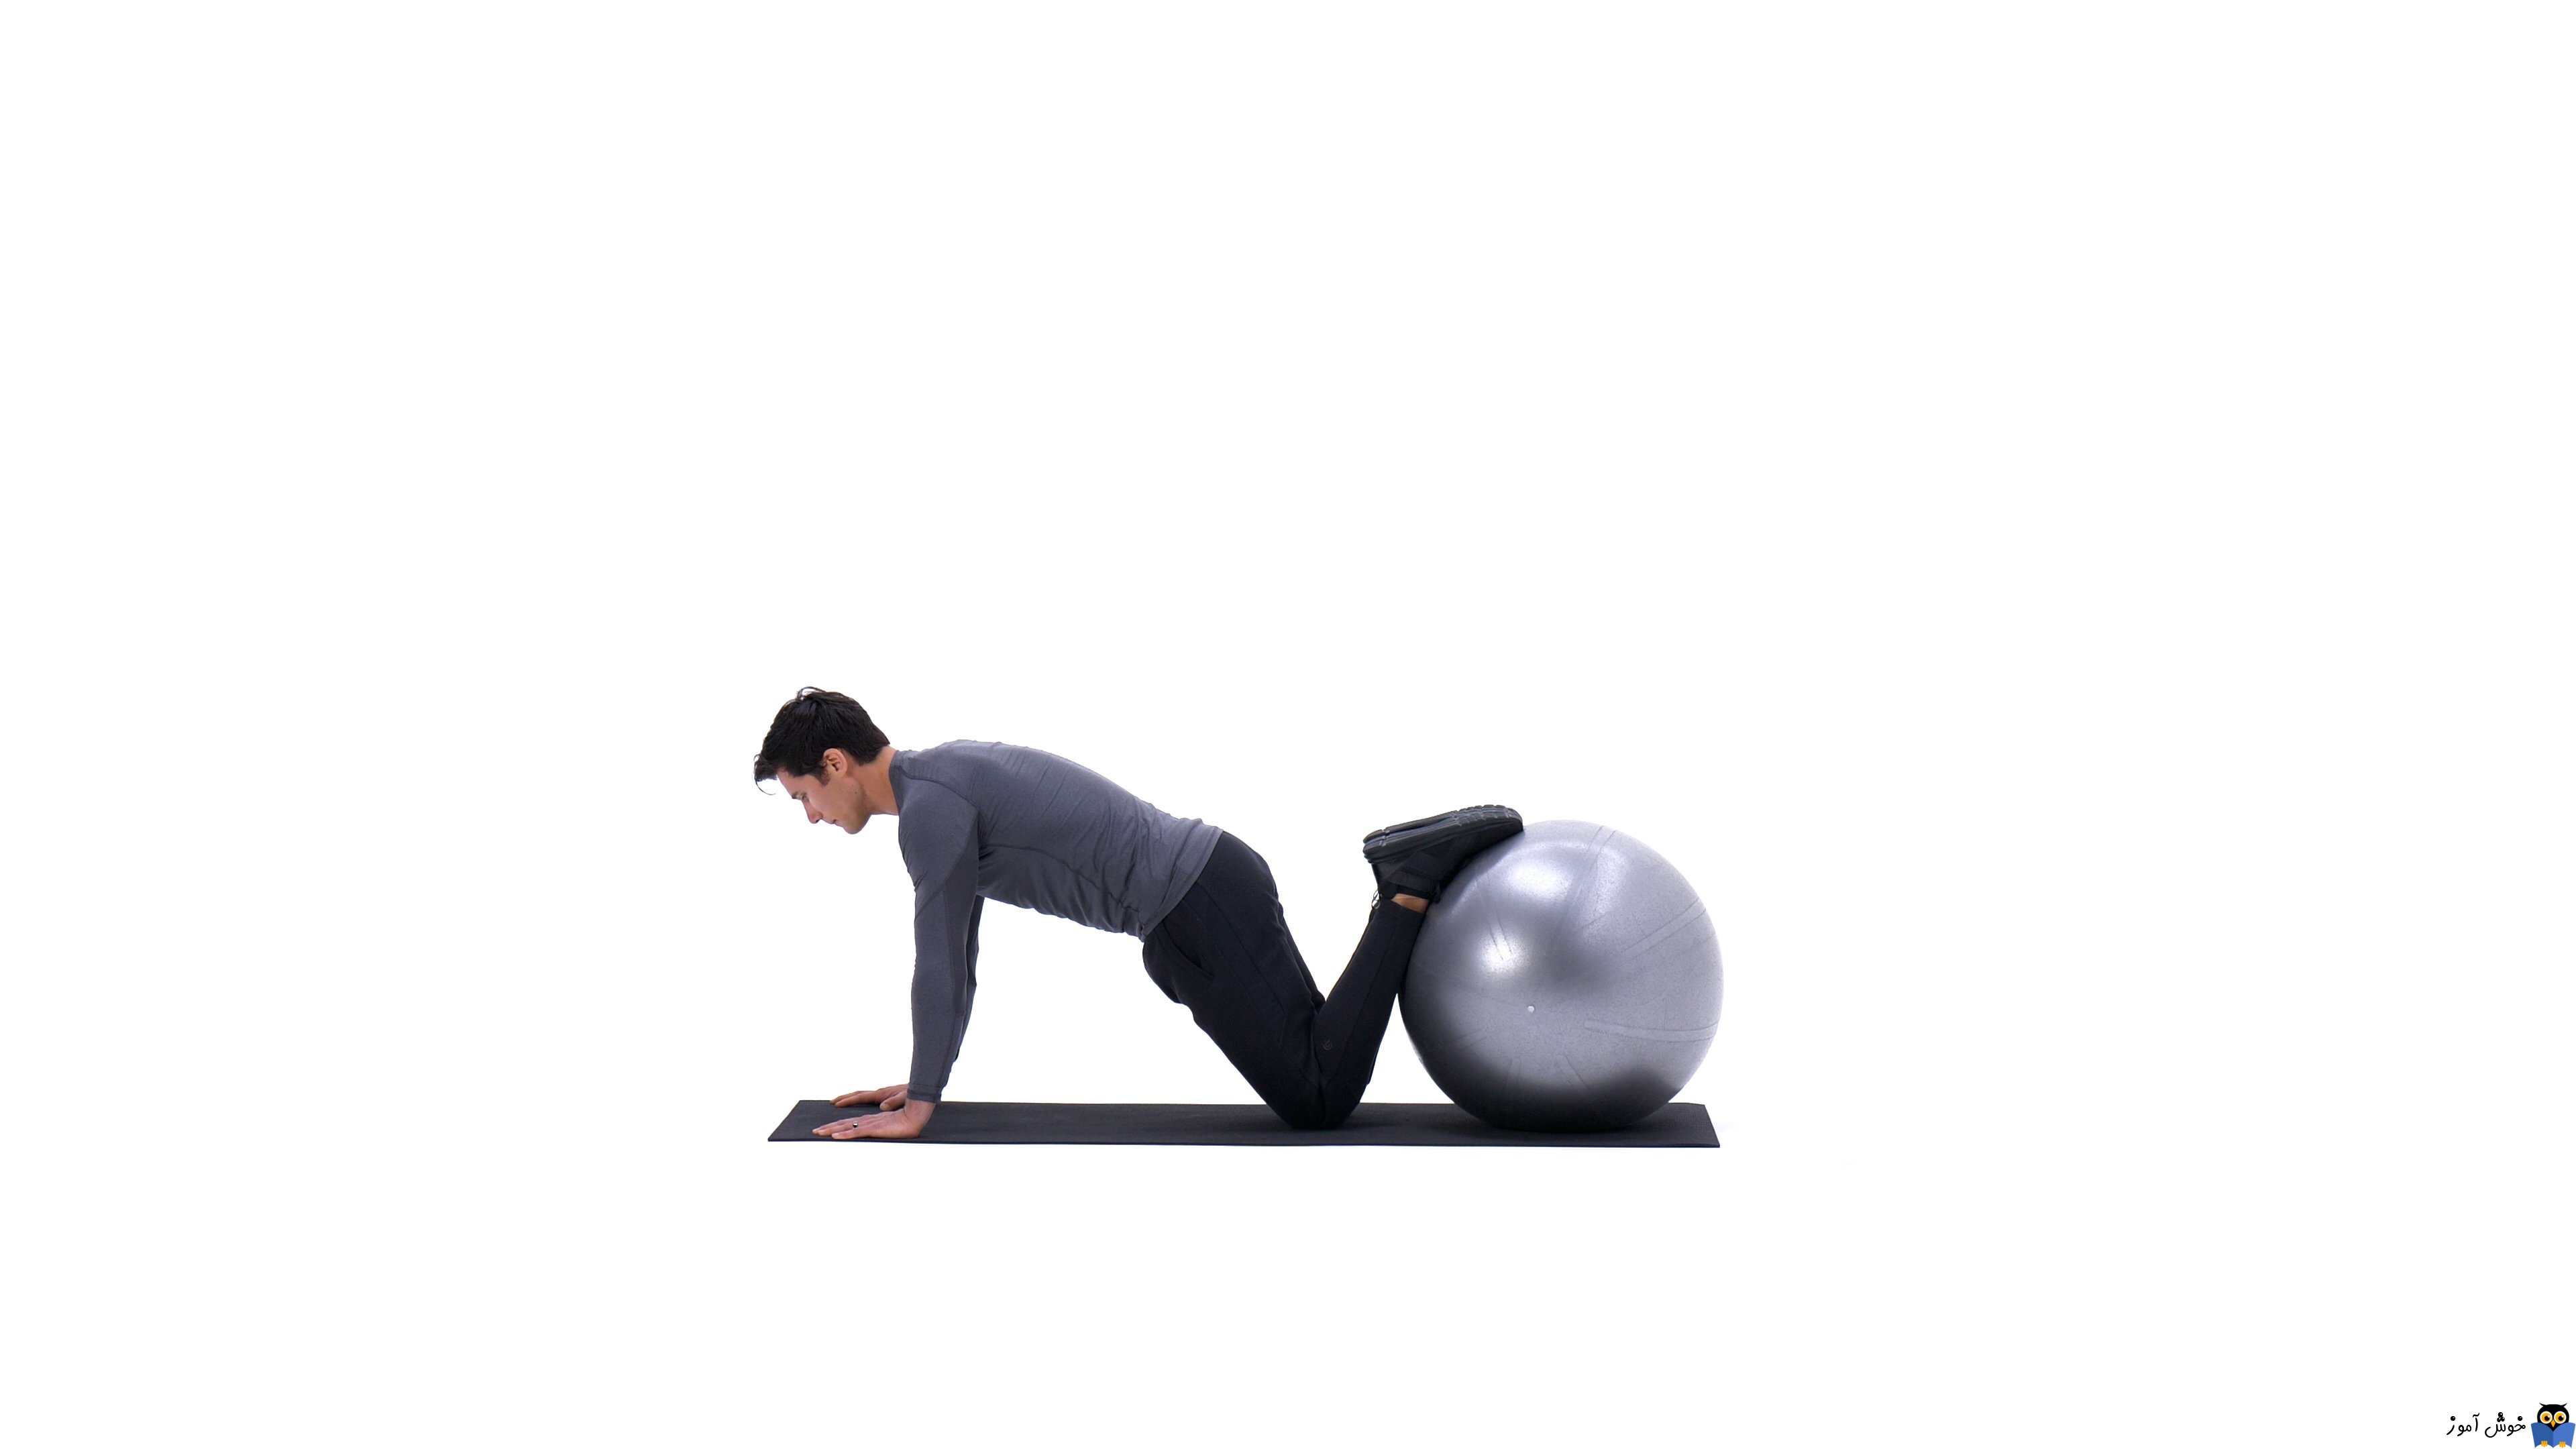 حرکات تمرینی با توپ - حرکت Feet-elevated plank on ball